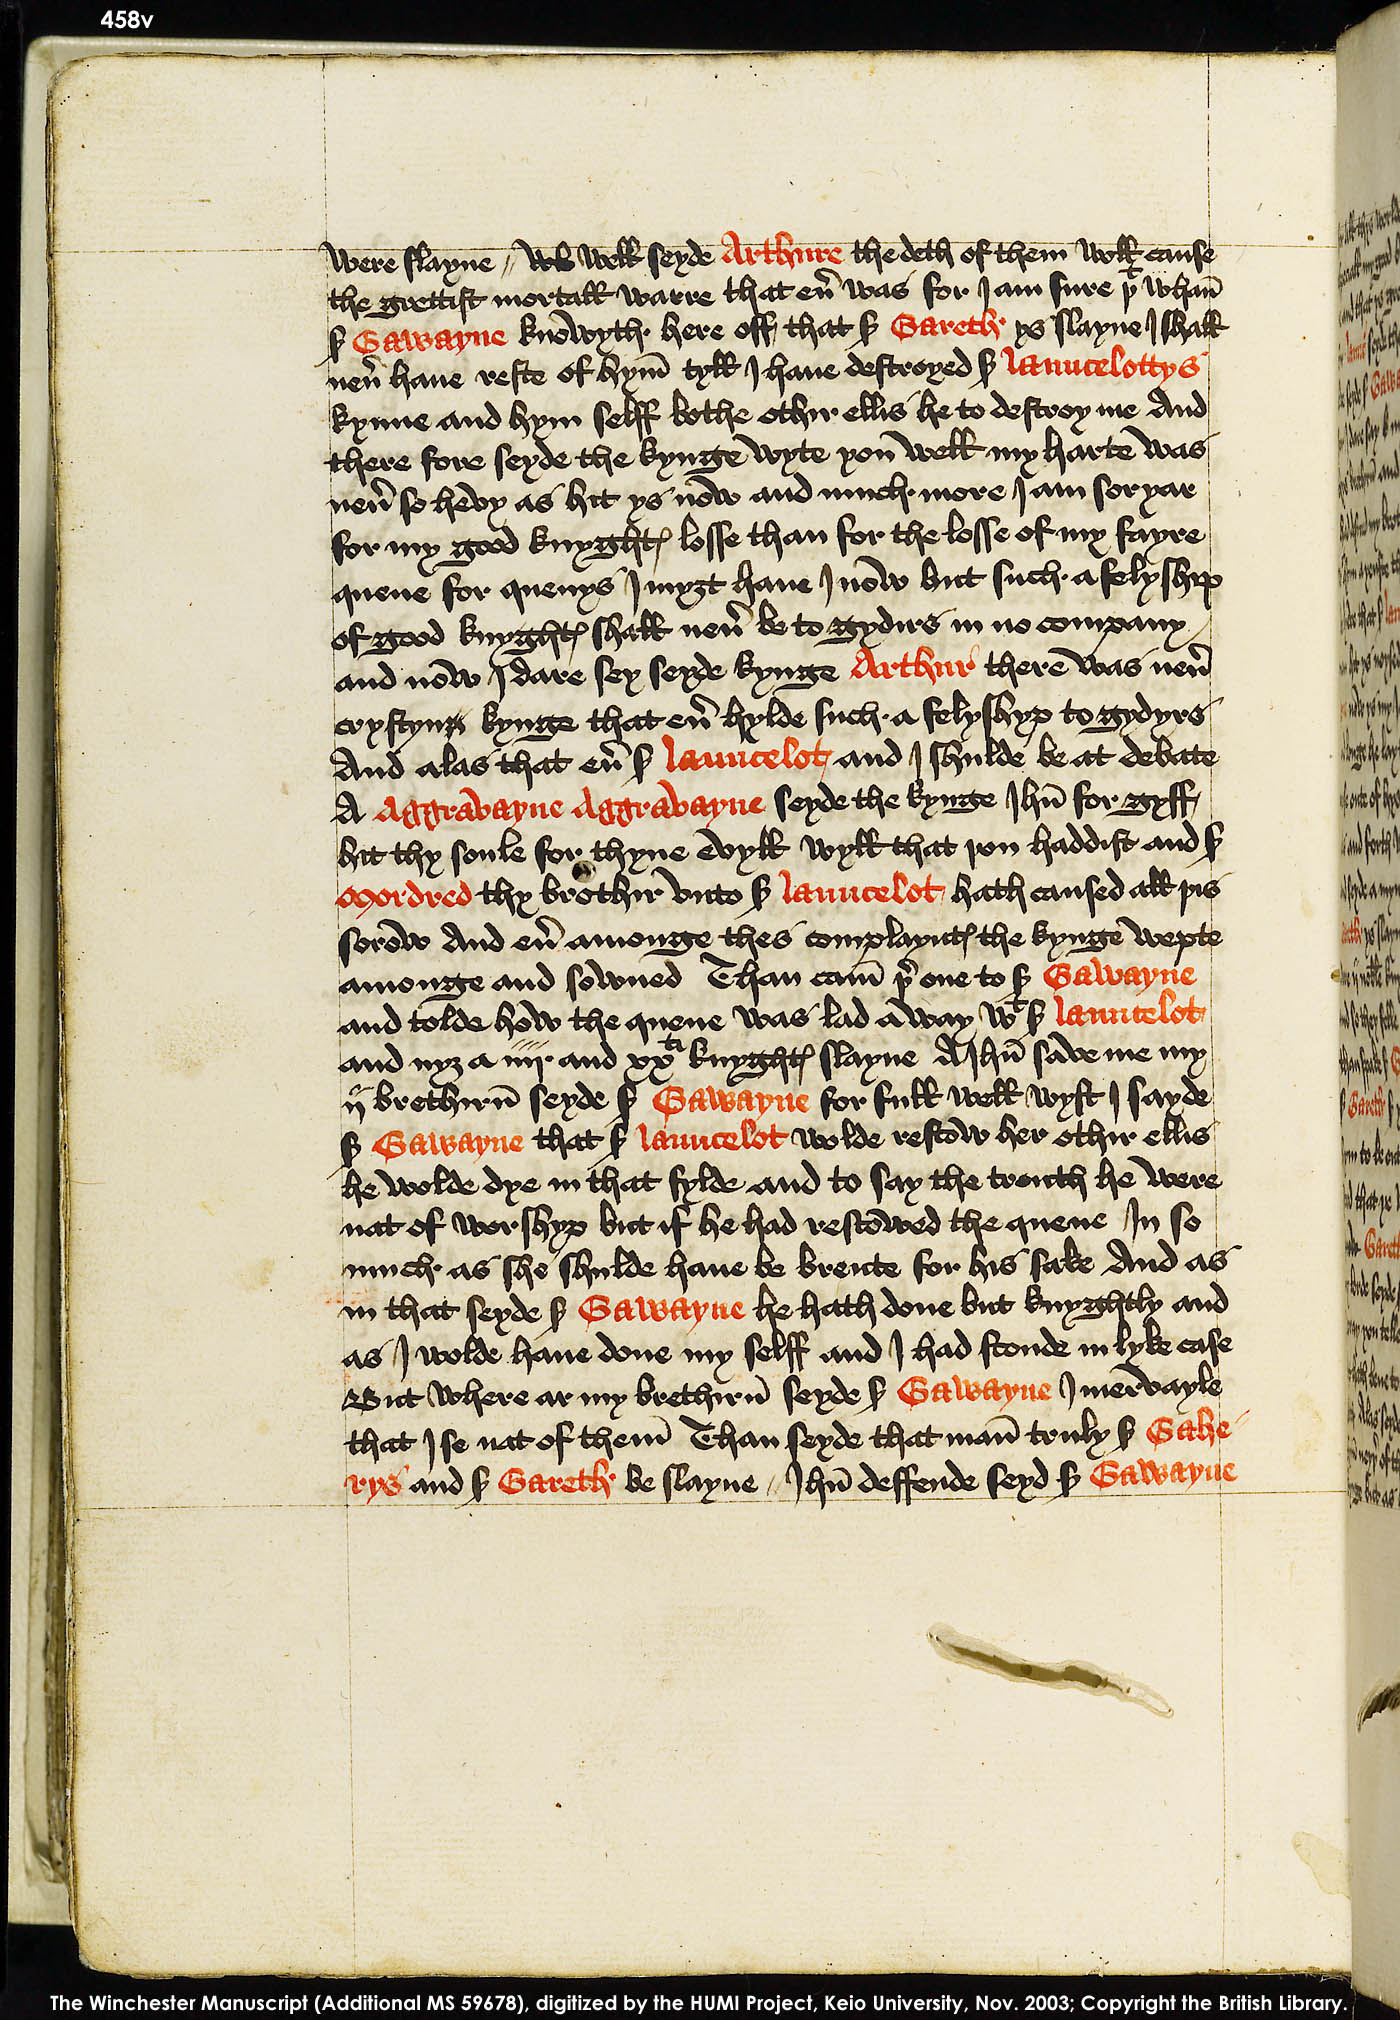 Folio 458v